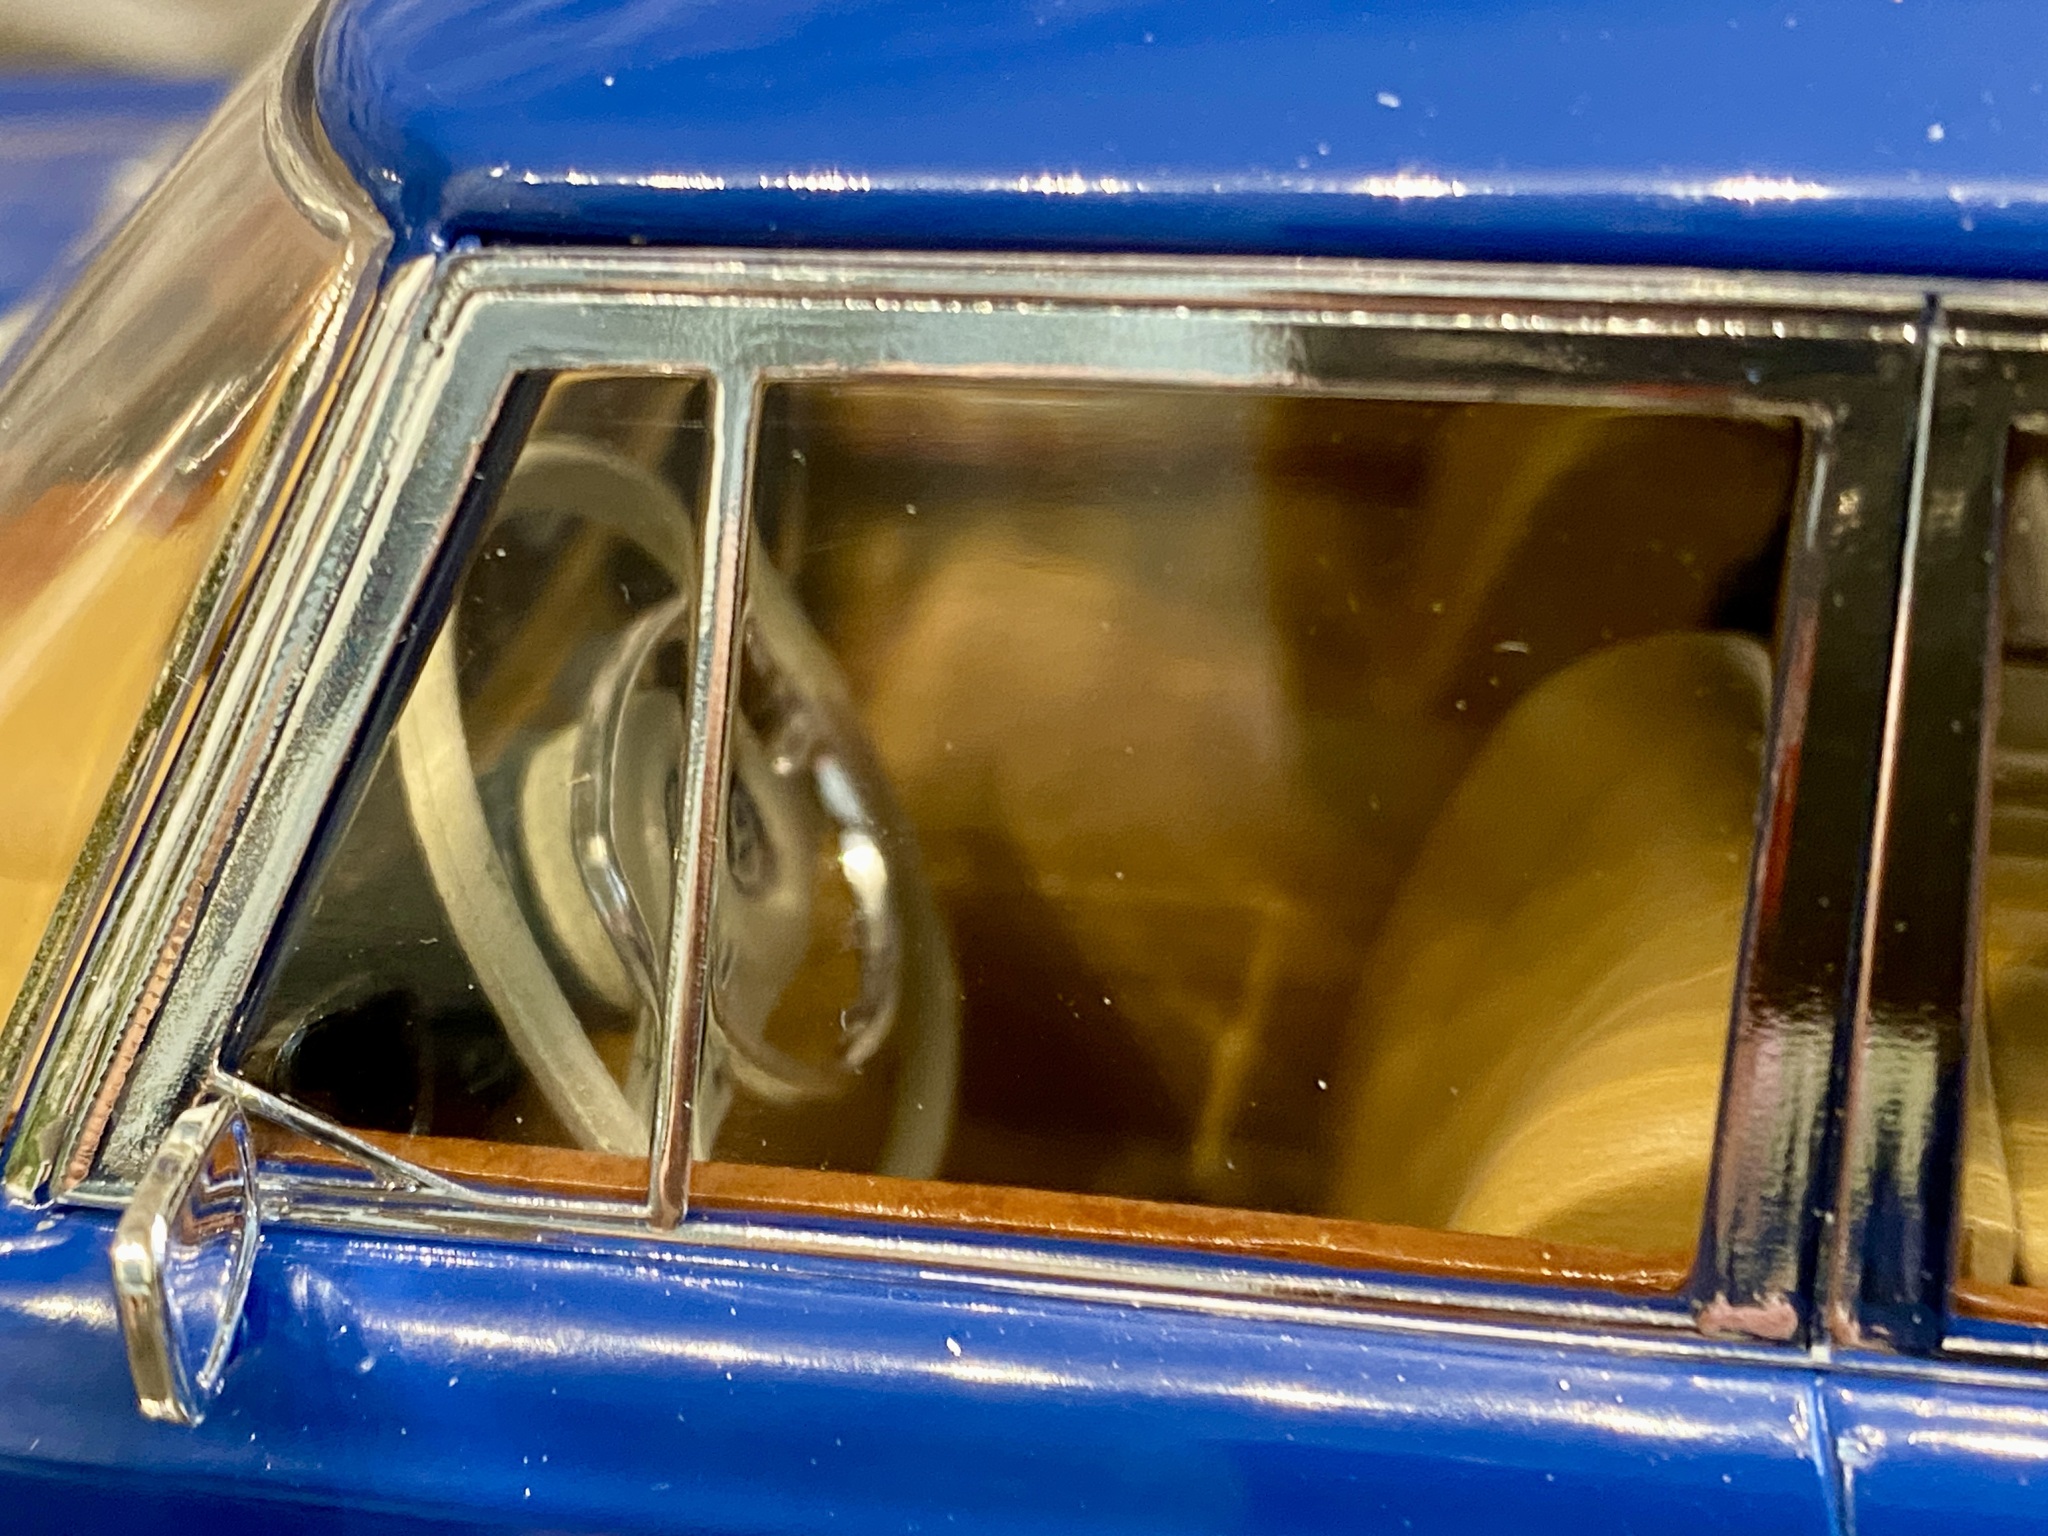 Skala 1/18 Mercedes 600 (W100) Pullman, blue 1969 fr MCG Model Car Group